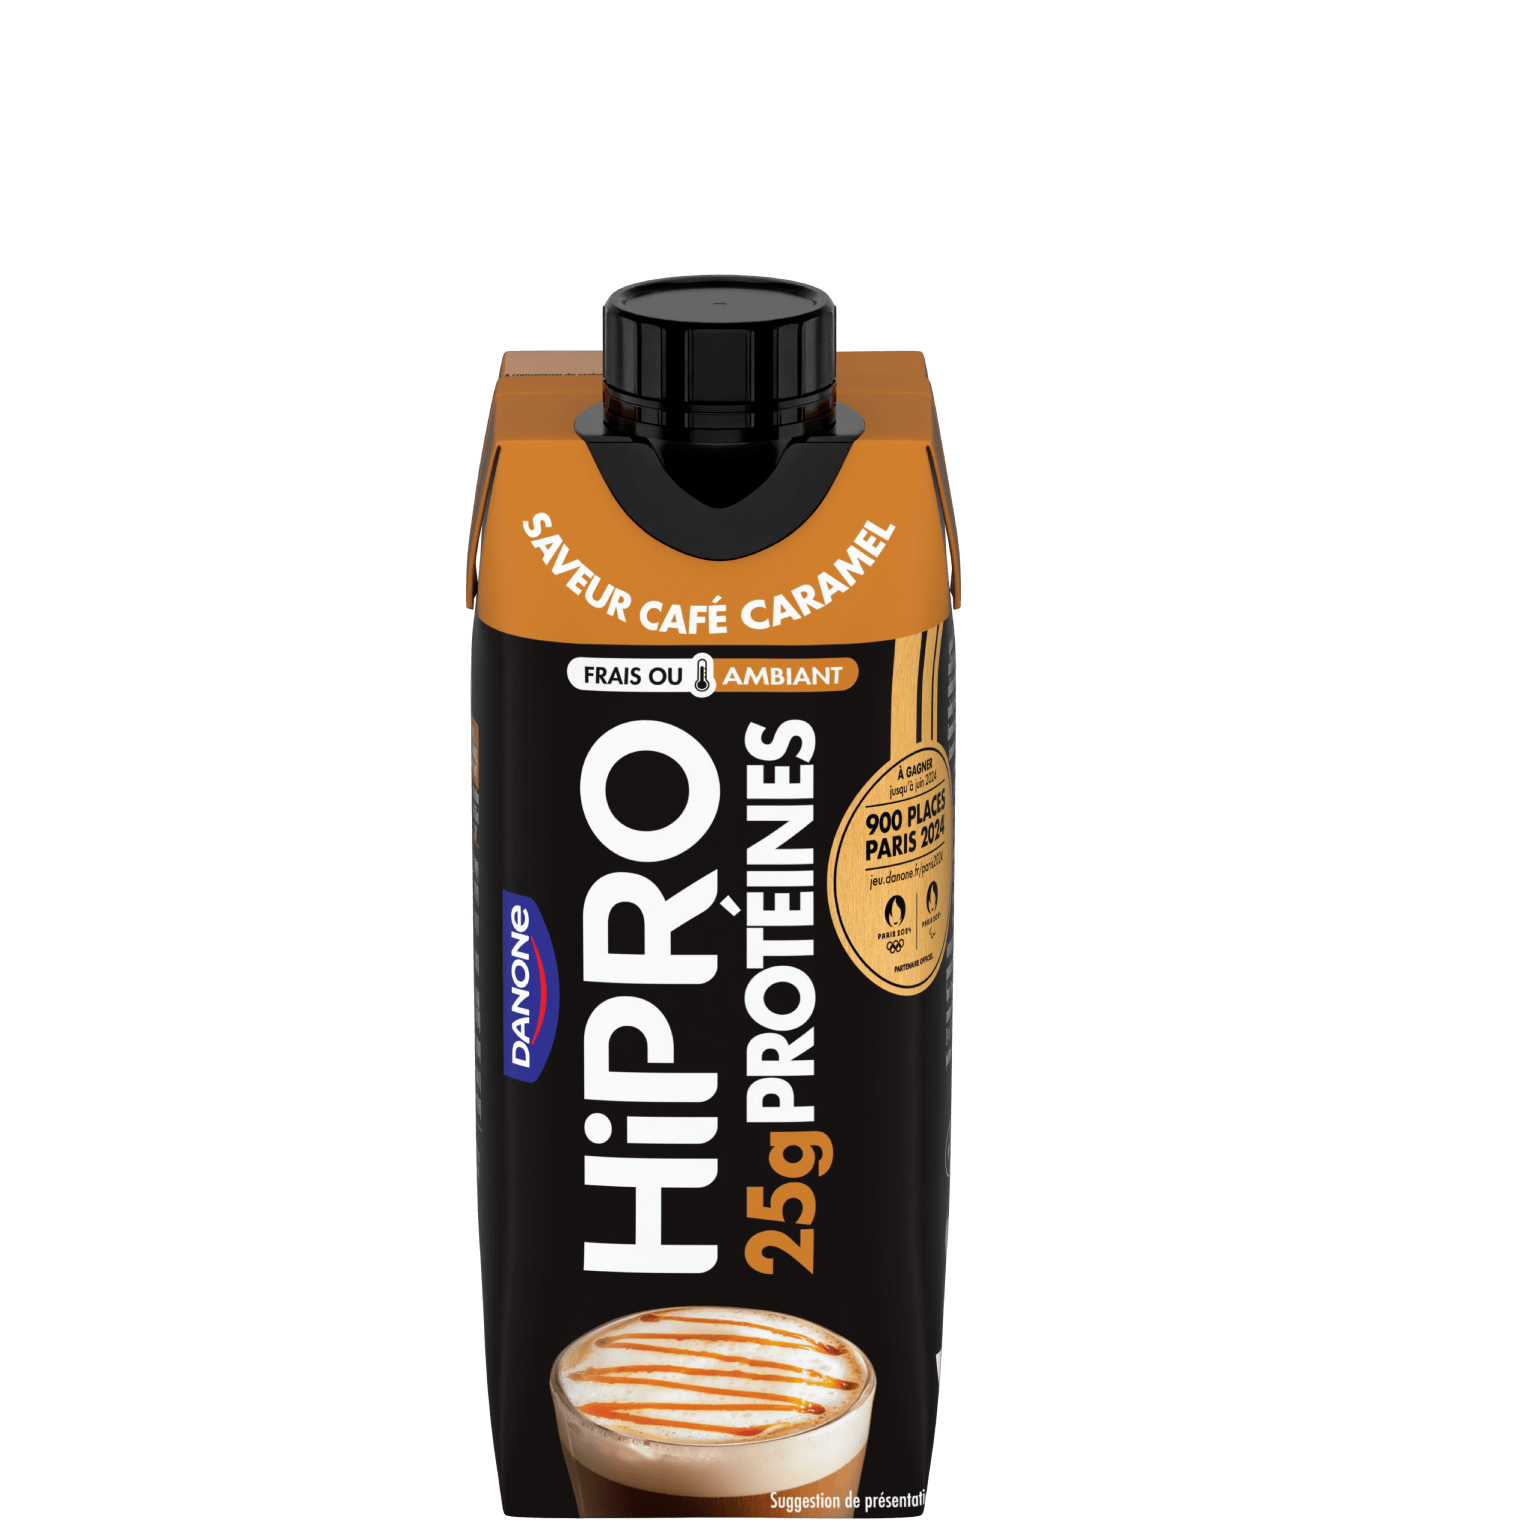 Découvrez notre délicieuse boisson UHT protéinée HiPRO Saveur Café-Caramel, avec 25g de protéines et sans matières grasses. A emporter partout avec vous grâce à sa formule ambiante !